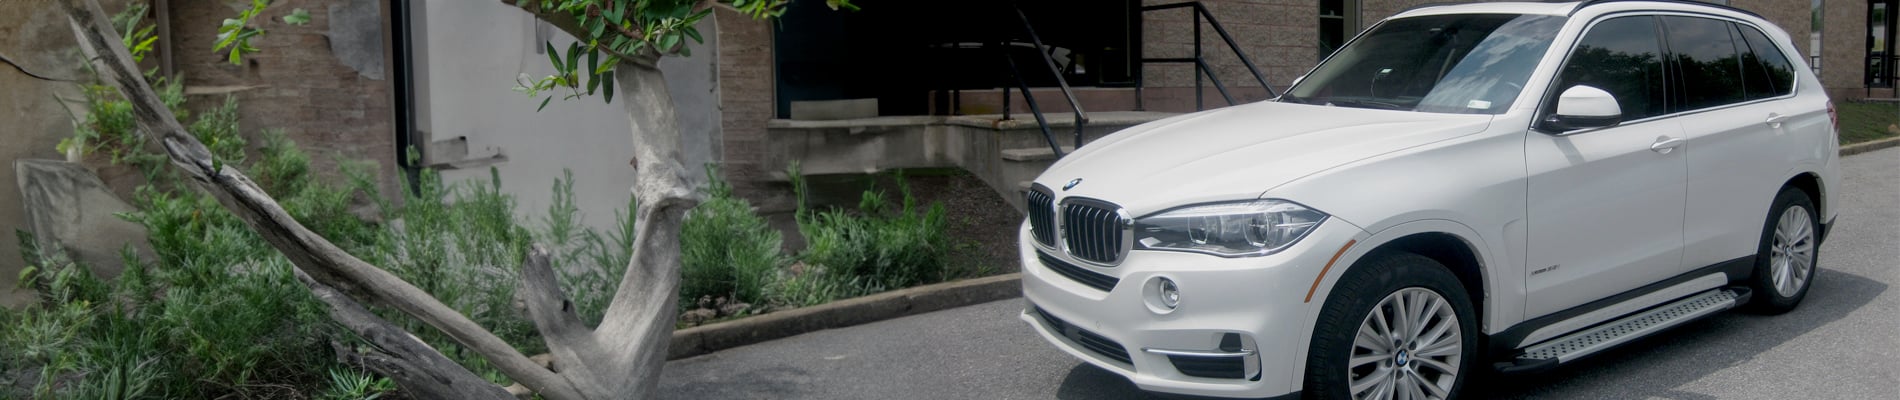 BMW X5 Accessories, Aftermarket Parts, Mods & Upgrades - AutoAccessoriesGarage.com